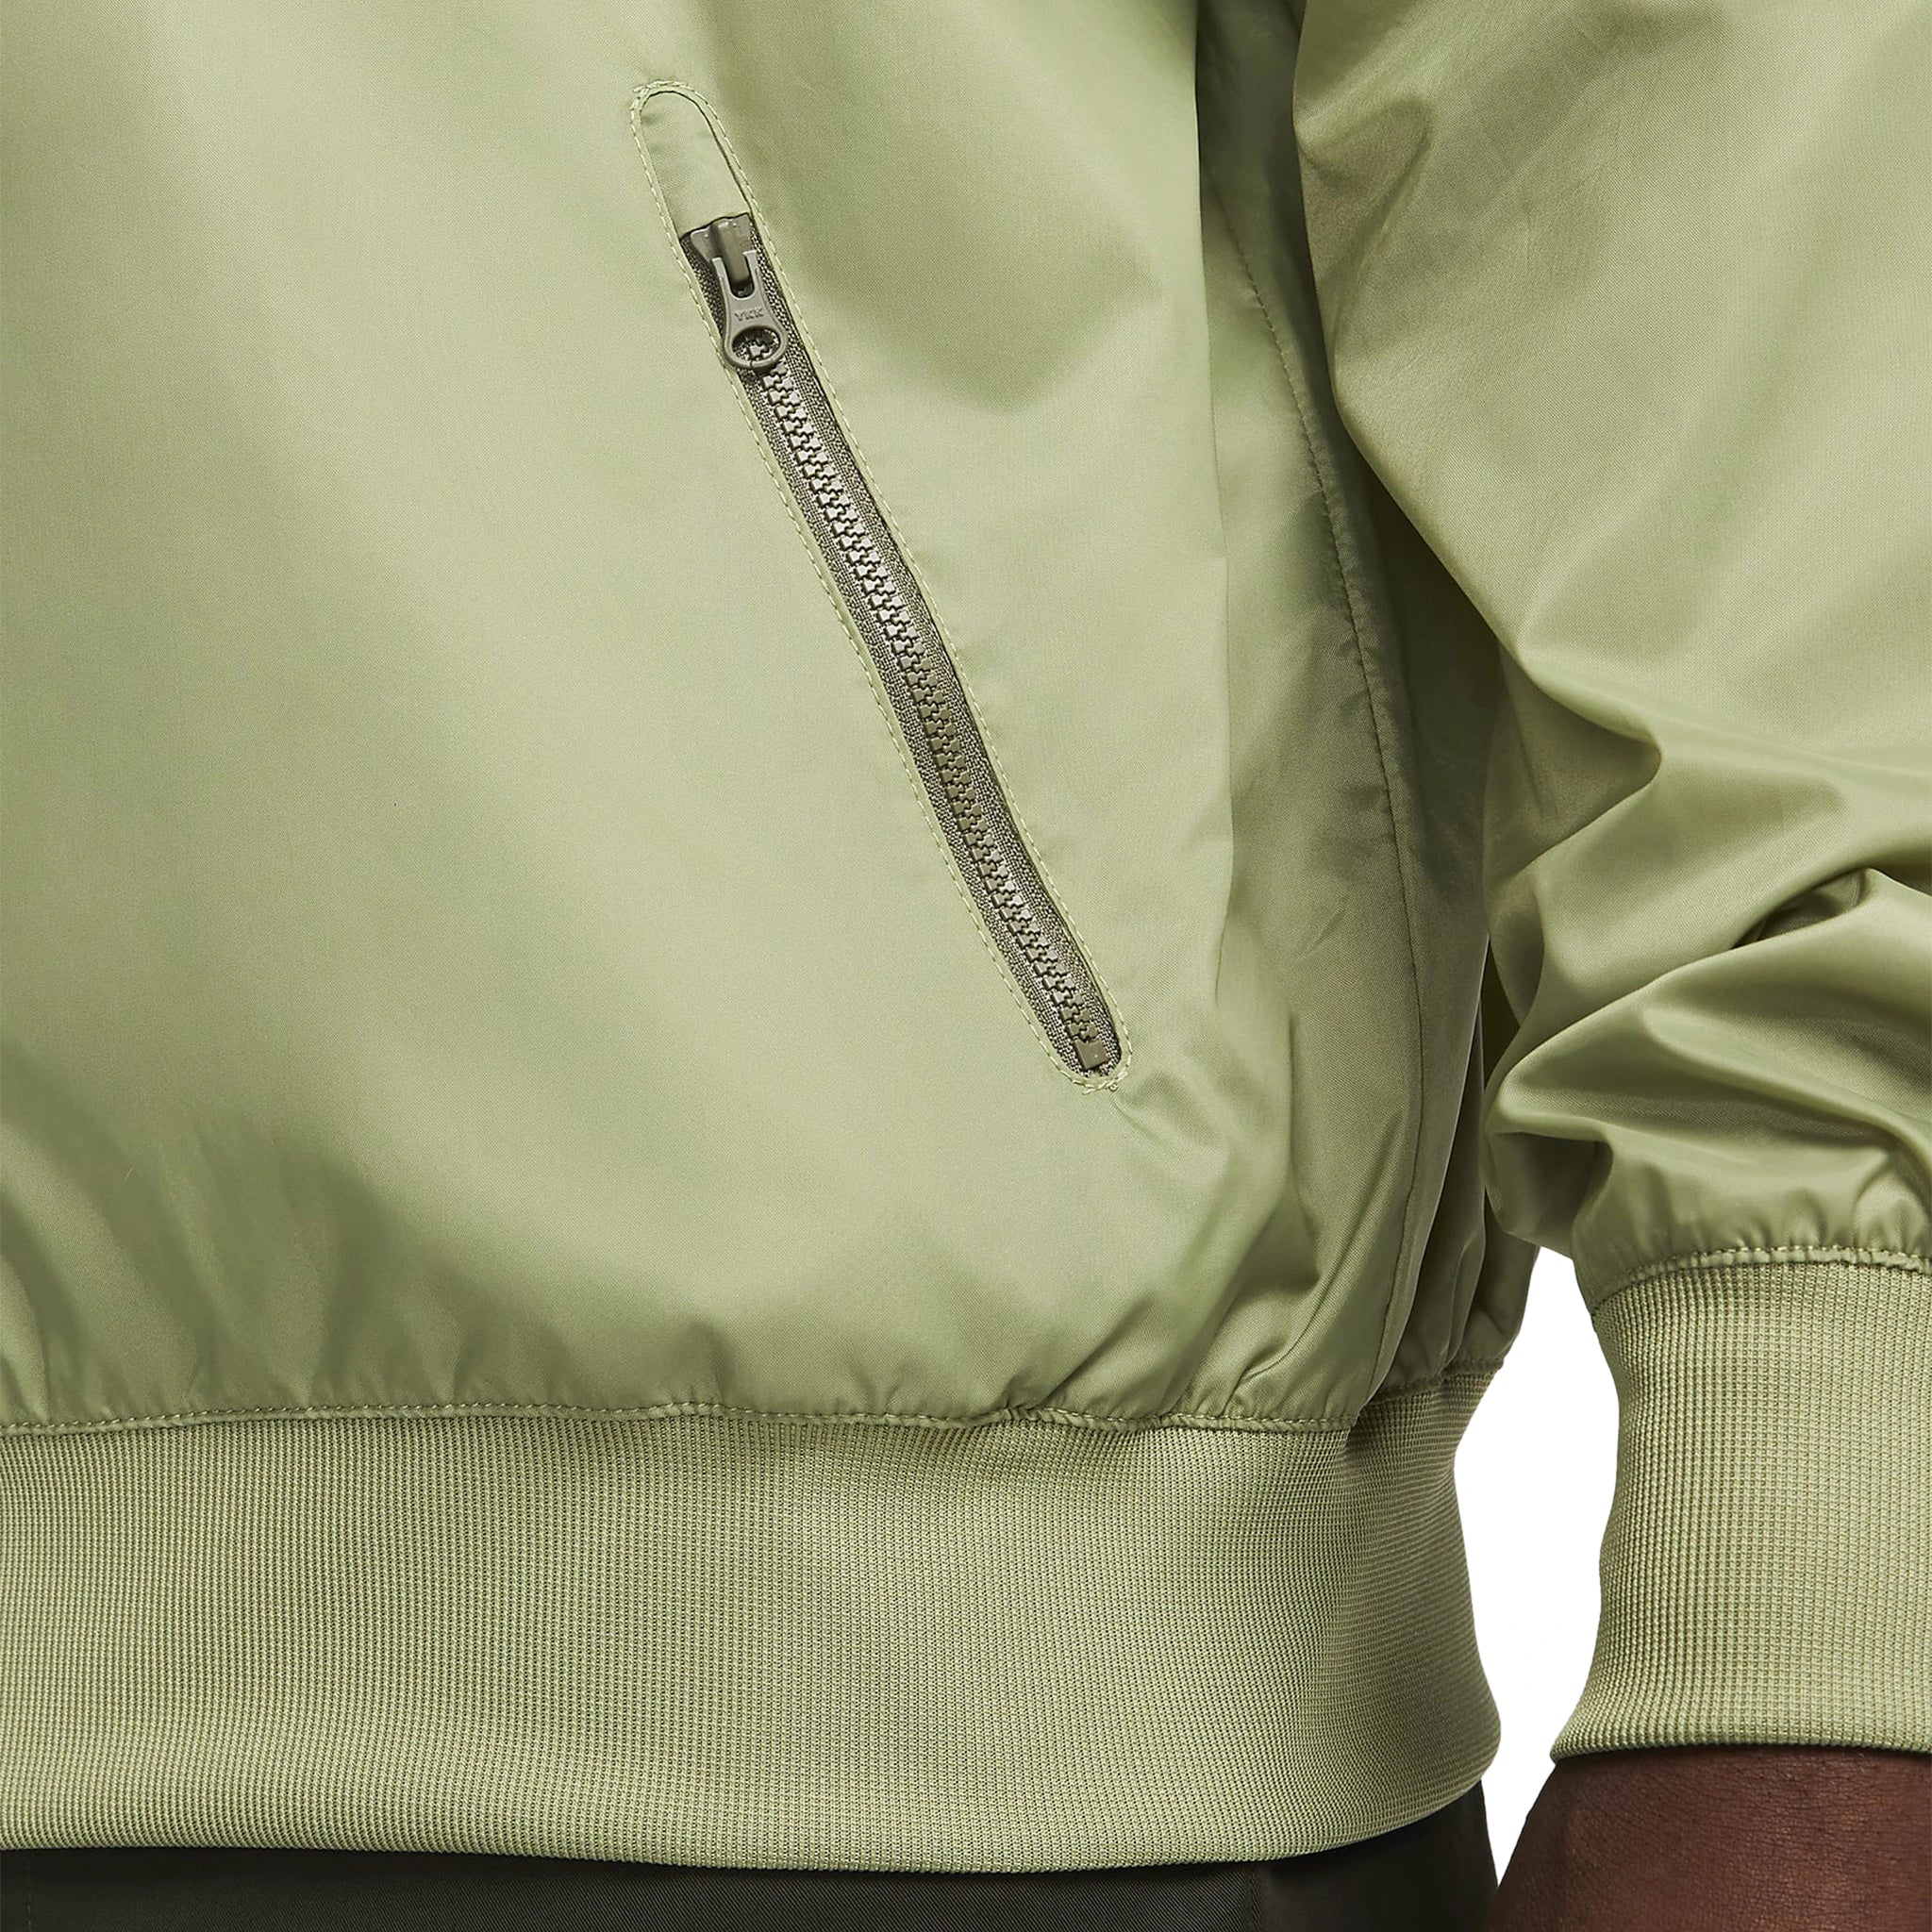 Zip detail view of Nike Sportswear Windrunner Green Jacket